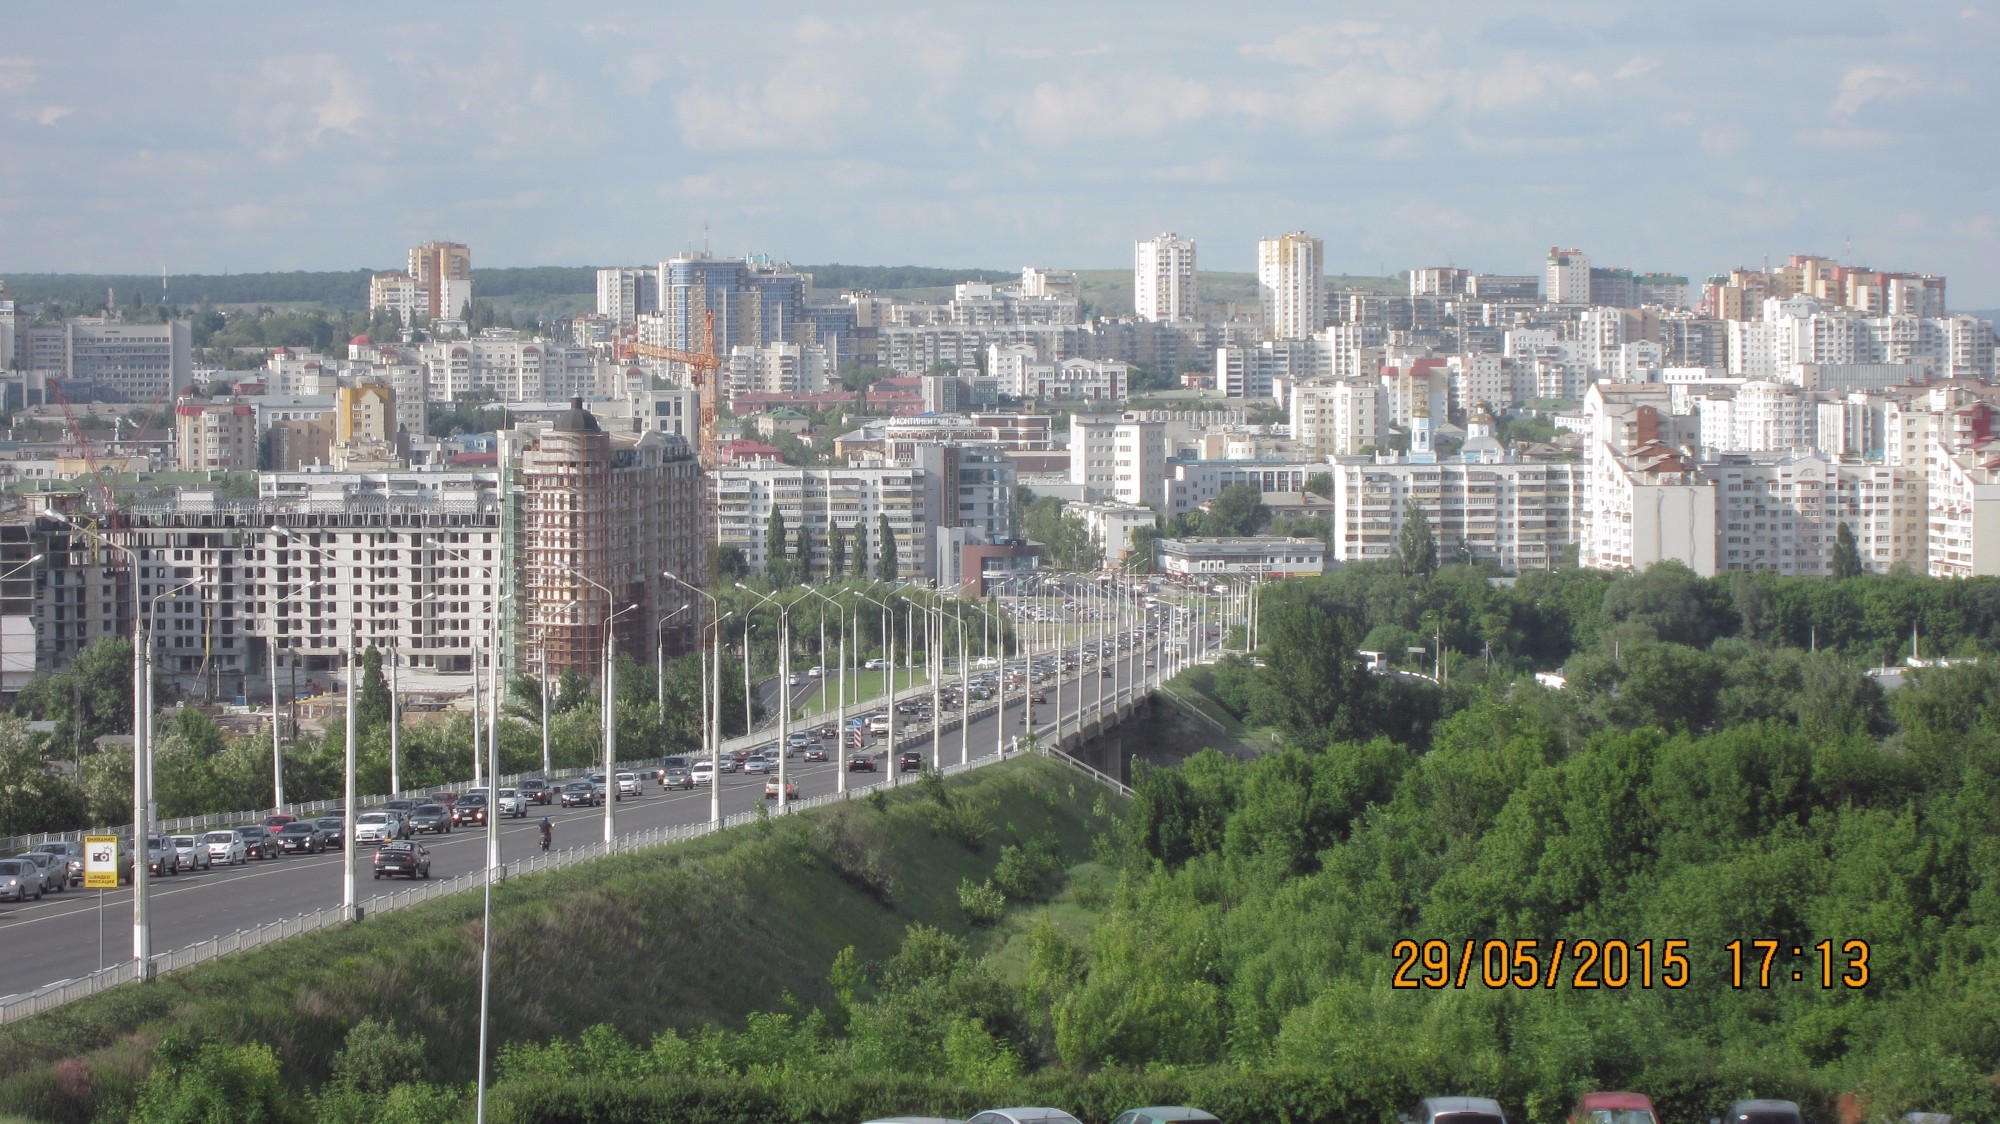 Вот он наш Белый город! Вид со смотровой площадки около памятника князю Владимиру на ул. Ватутина.